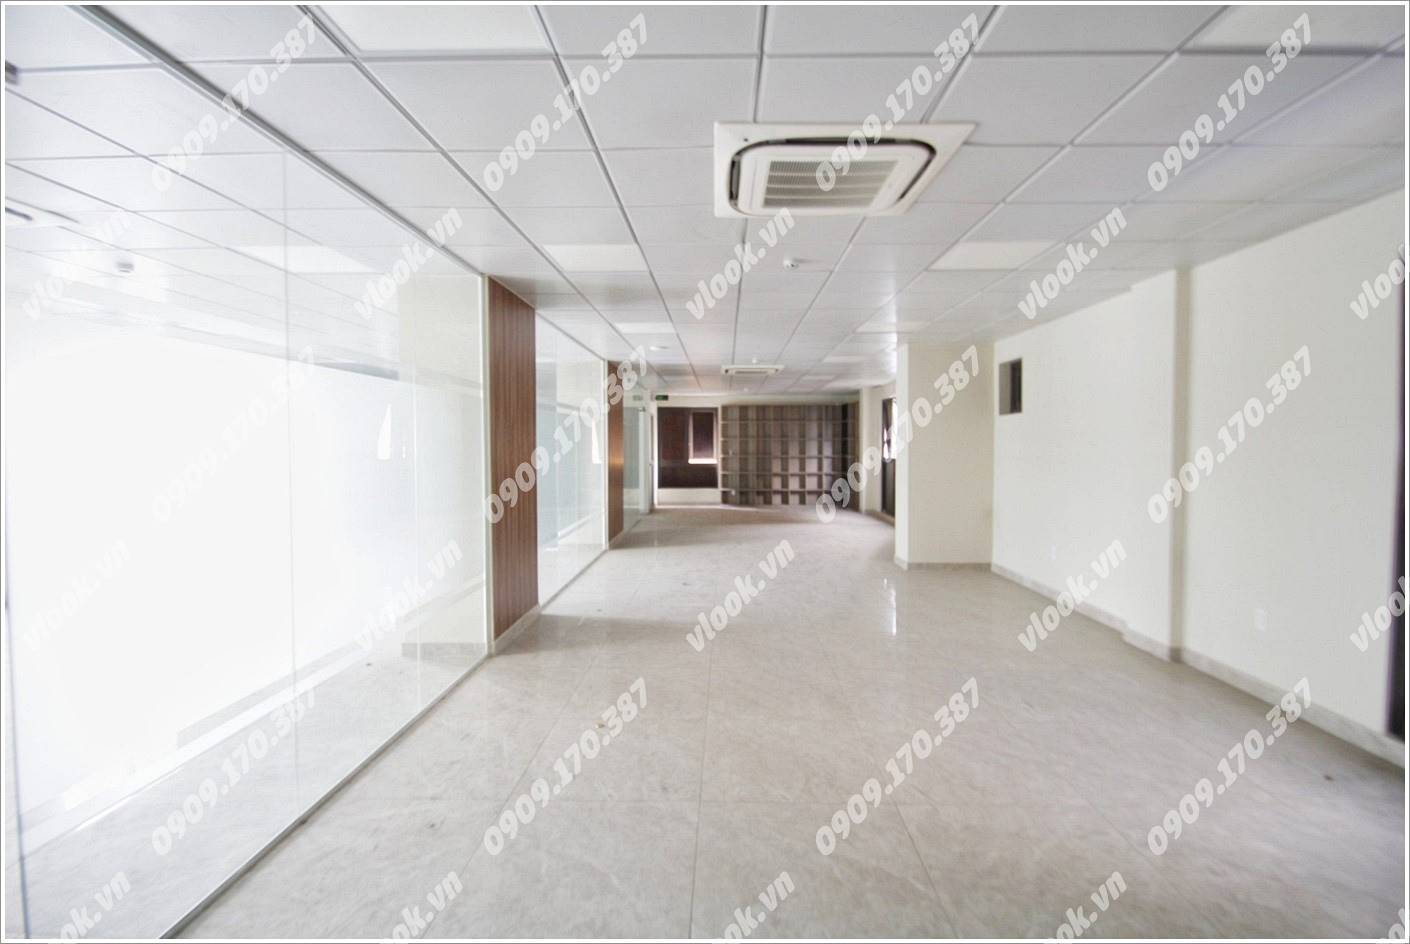 Cao ốc văn phòng cho thuê toà nhà Halo Building Hoàng Sa, Quận 1, TPHCM - vlook.vn